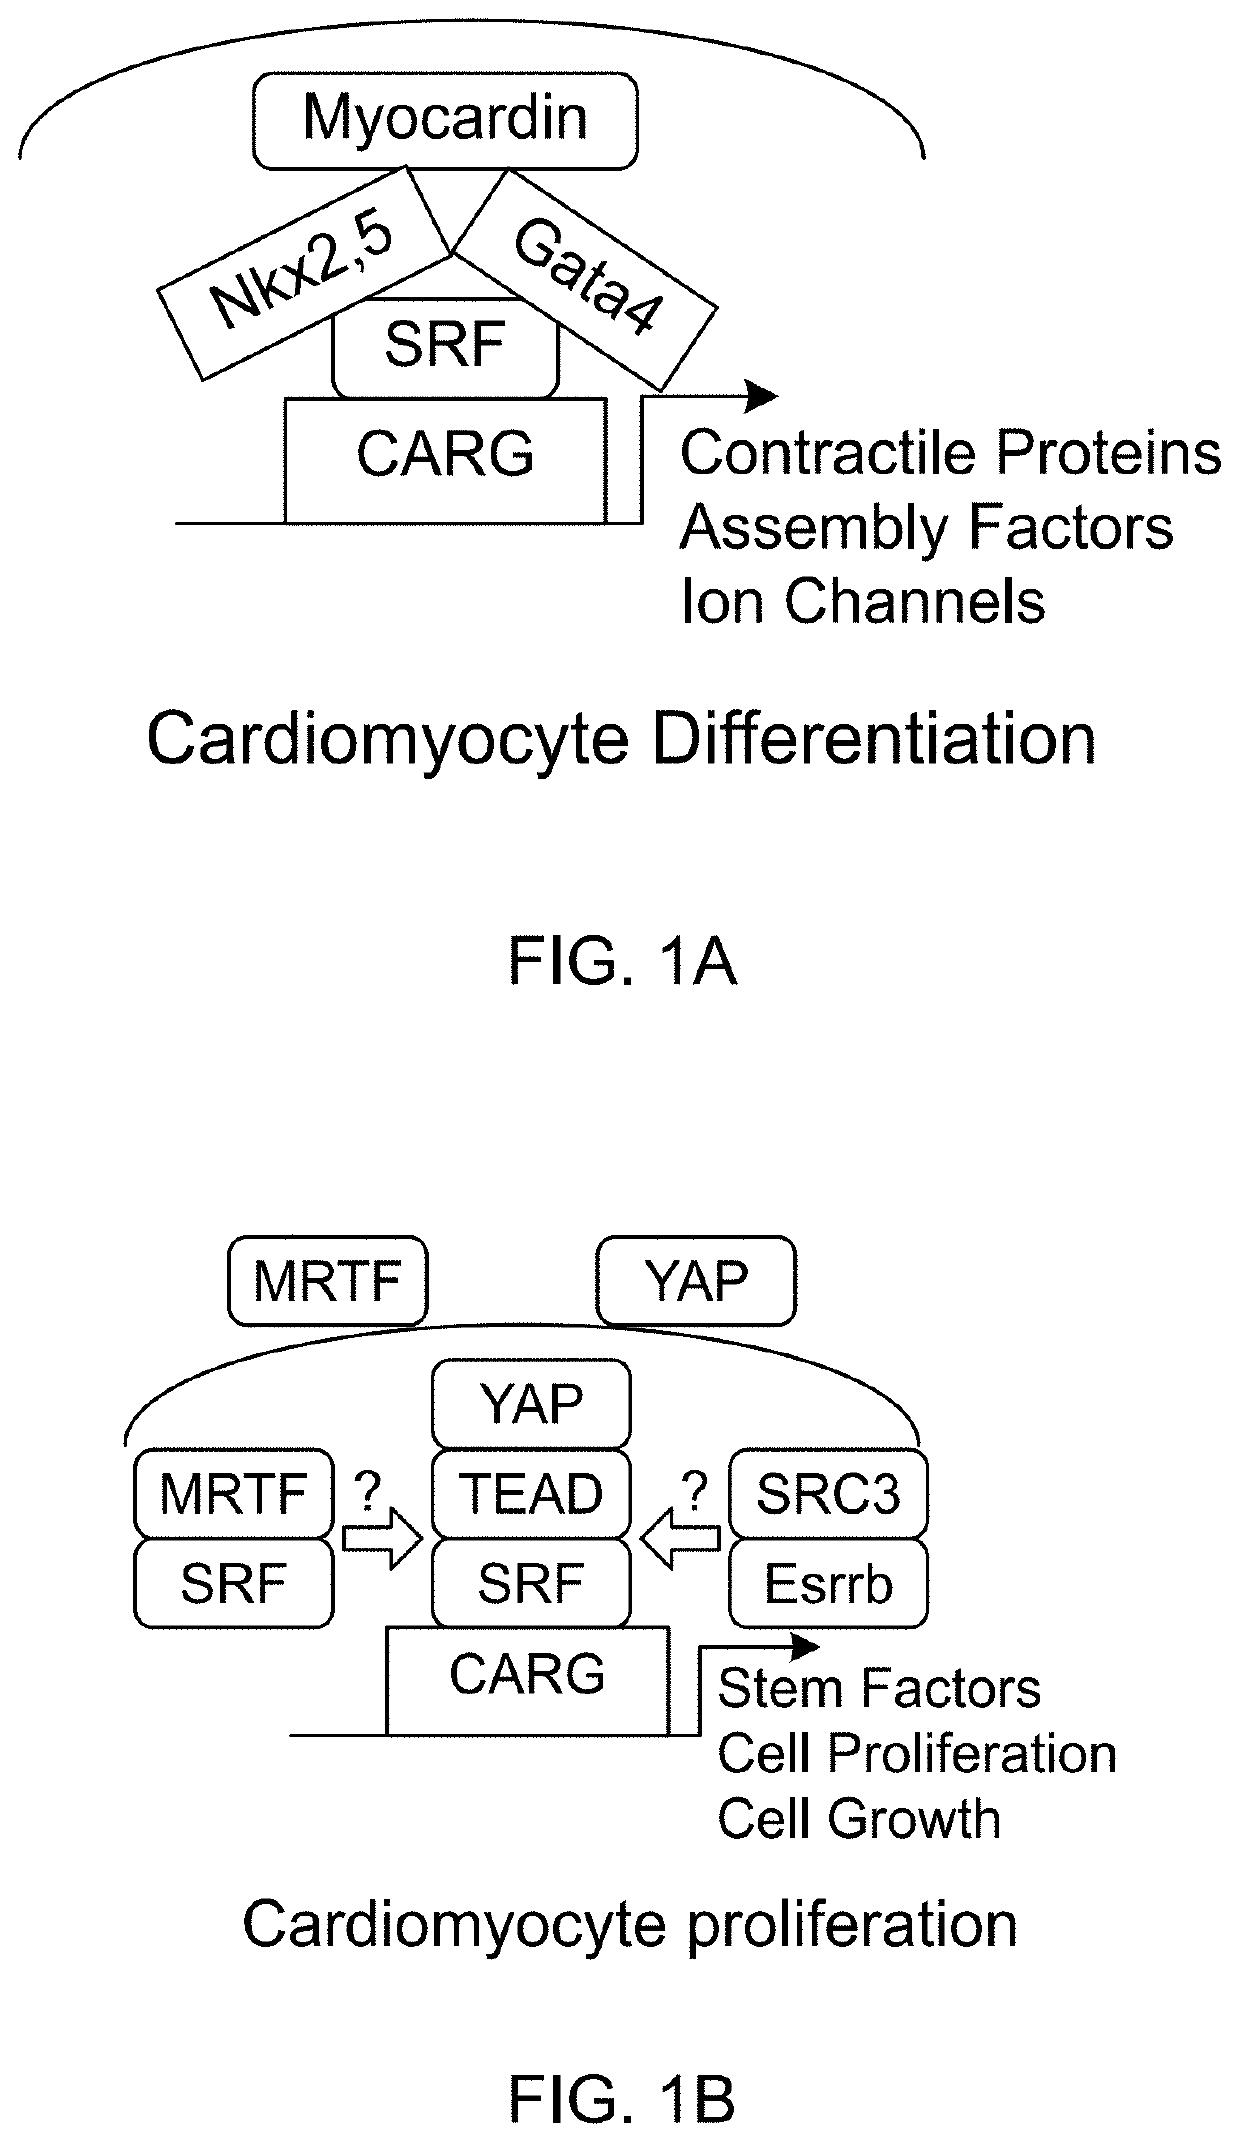 Enhanced cardiomyocyte regeneration